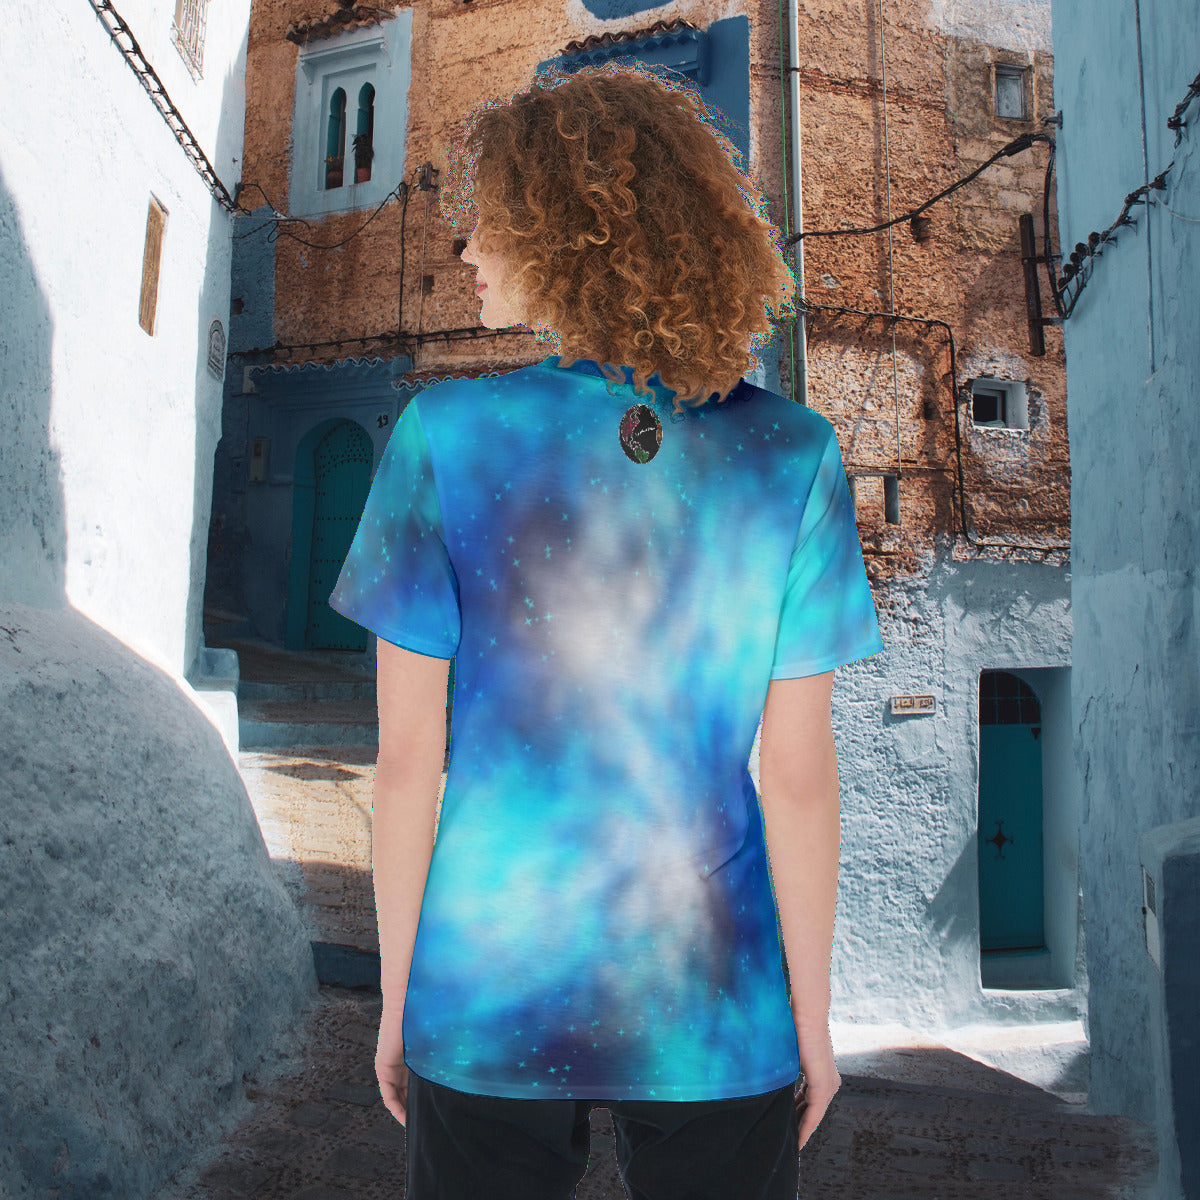 All Emotions Are Valid Blue Galaxy Nebula Women's O-Neck Fashion Tee T-Shirt - The Nebula Palace